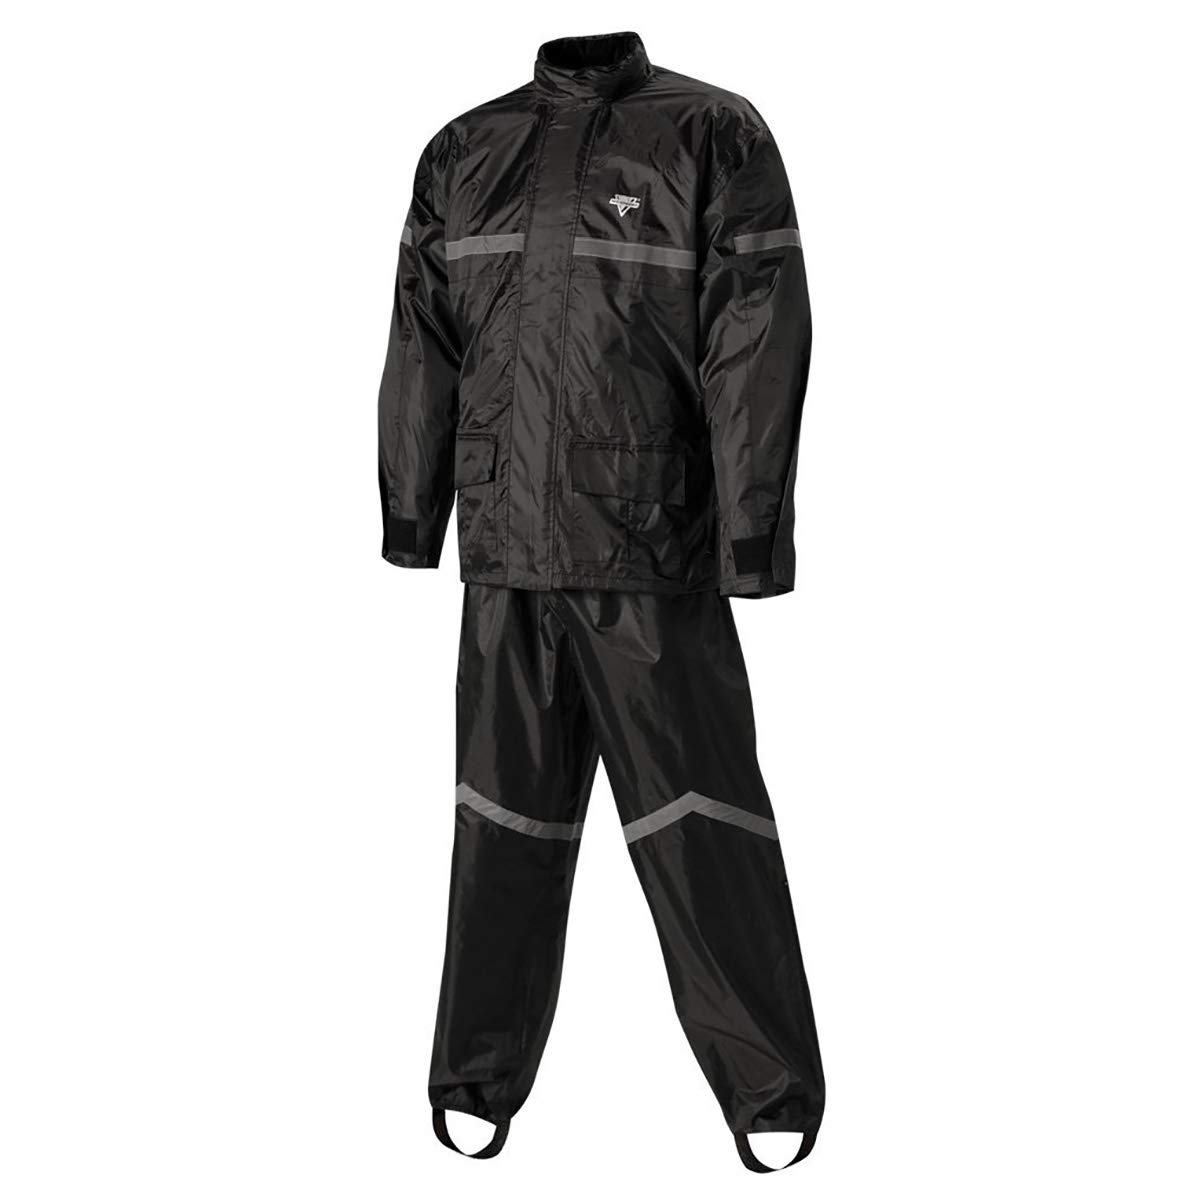 Nelson-Rigg Stormrider Regenanzug, 100% wasserdicht, Hose und Jacke mit reflektierenden Streifen (Schwarz, Größe M) von Nelson-Rigg